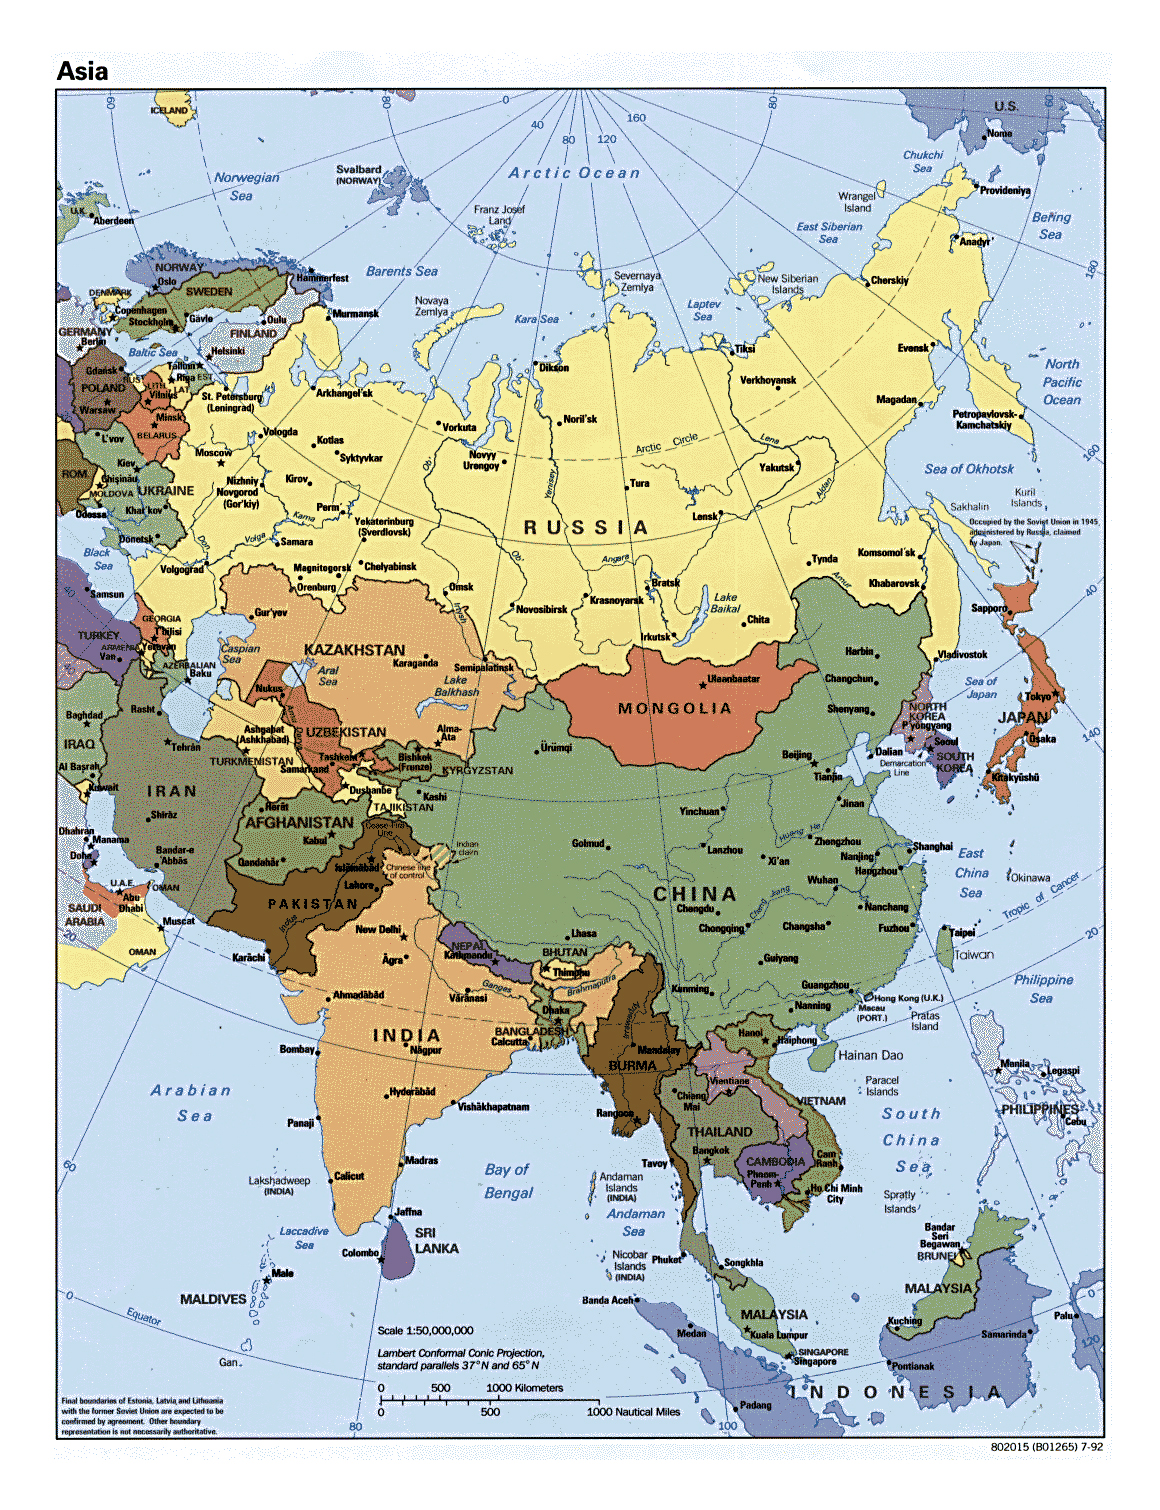 Descubrimiento Contenido Abrasivo Mapa Politico De Asia Paises Y Sexiz Pix 3750